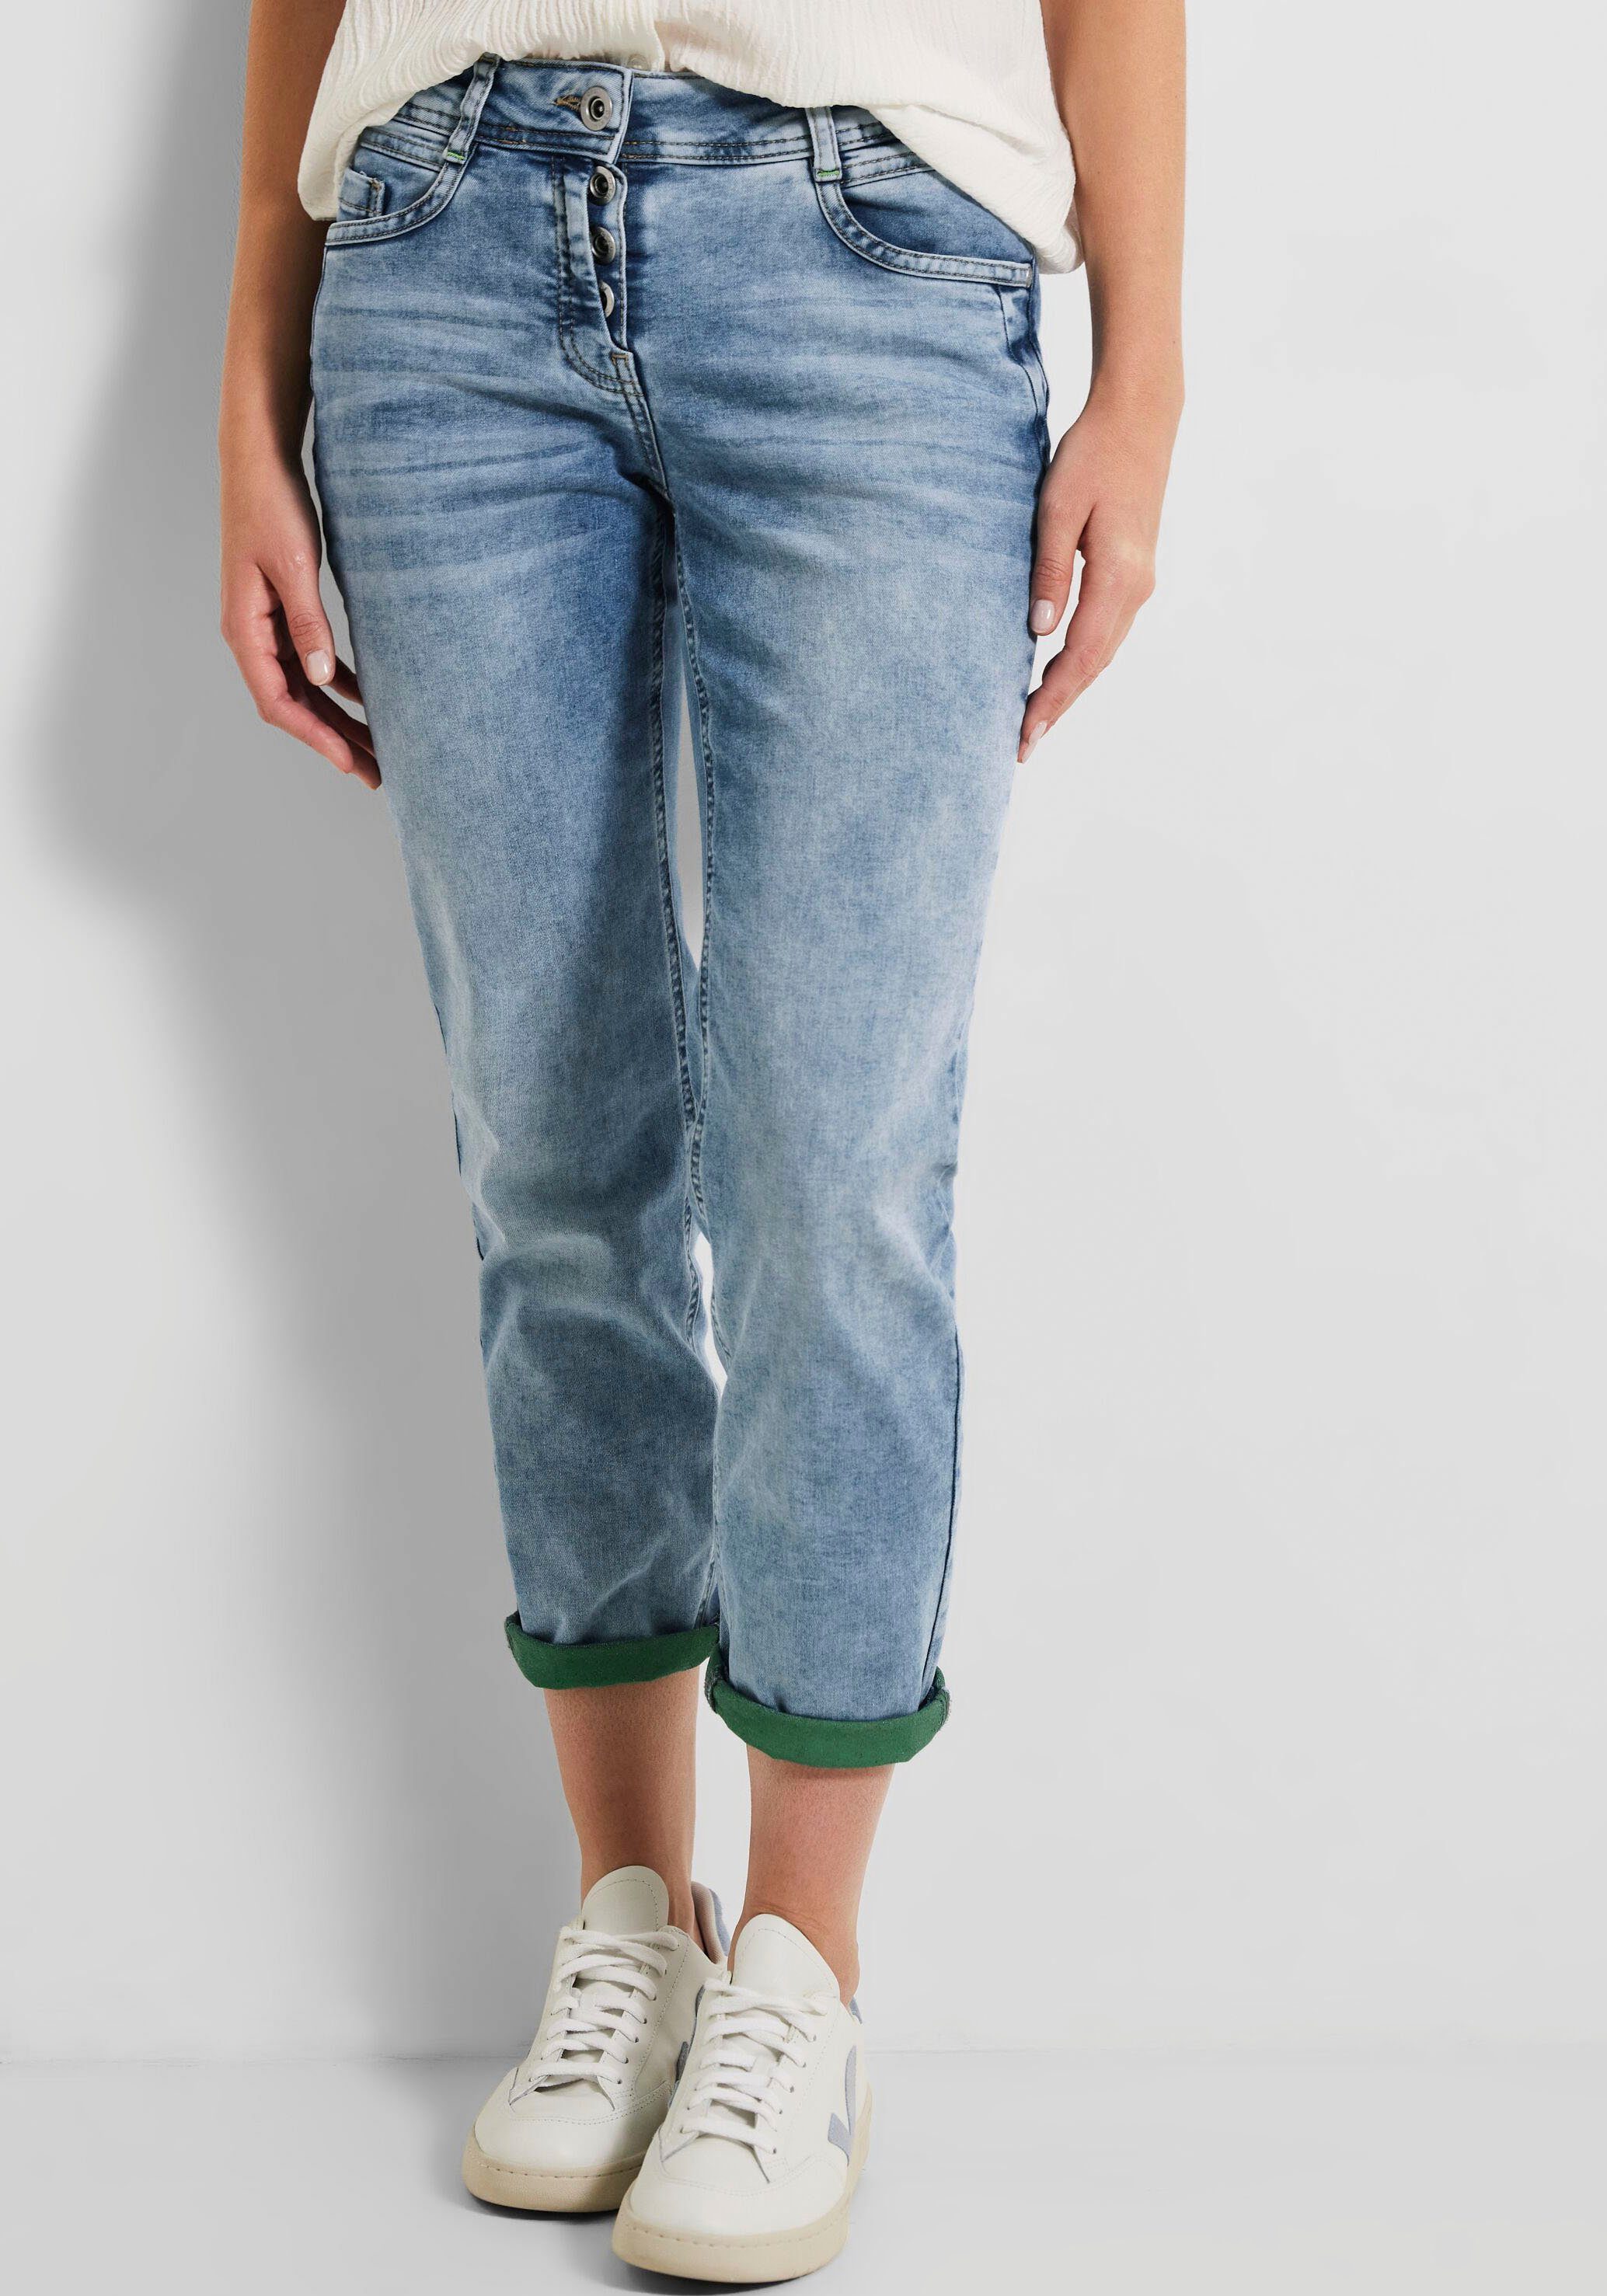 Toronto Hose in Jeans von in Used-Optik, Waschung CECIL, Denimstyle Basic 7/8 hellen Cecil einer 7/8-Jeans